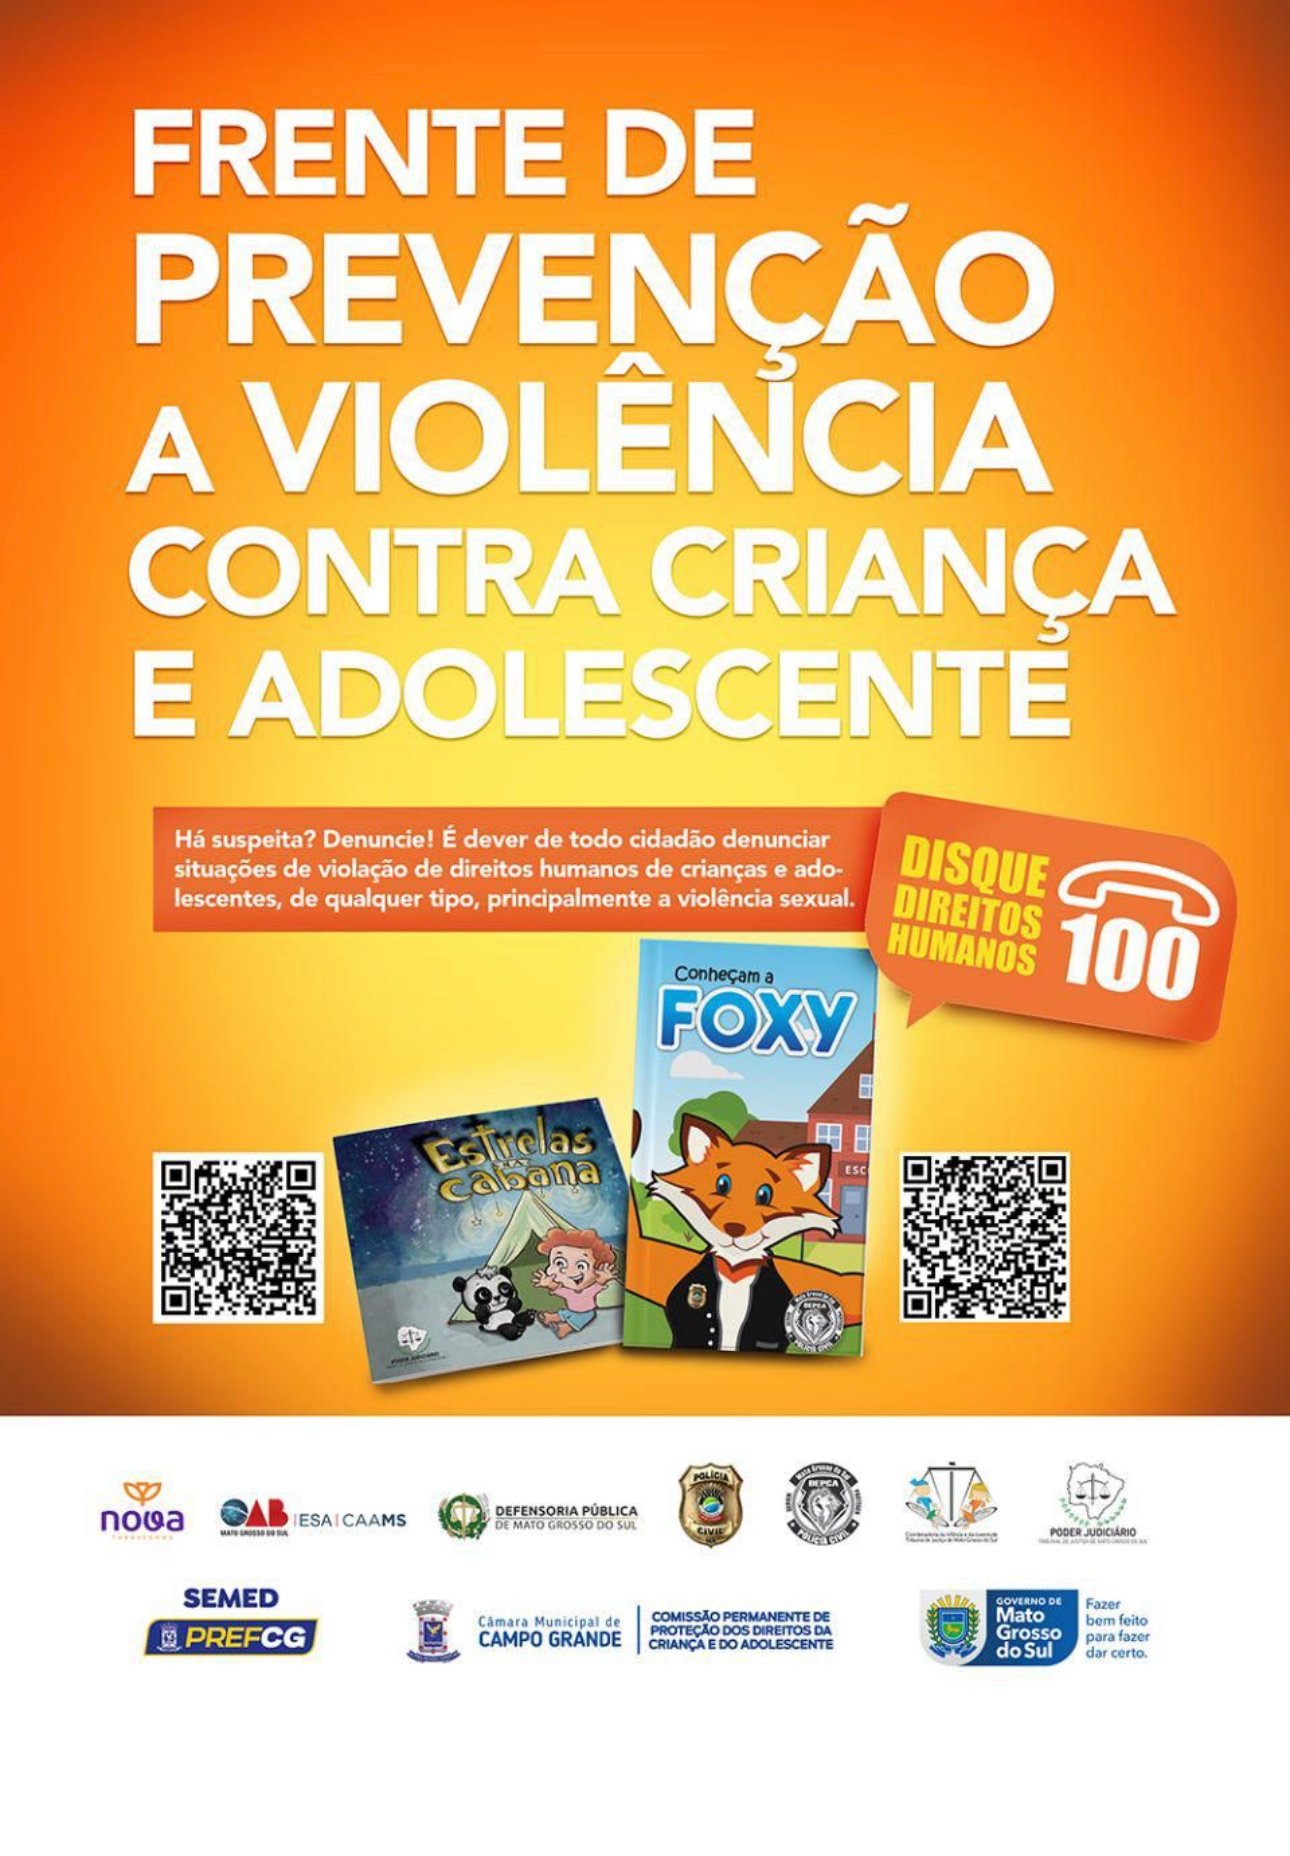 Frente de Prevenção a Violência contra Criança e Adolescente lança campanha educativa de prevenção nas escolas municipais